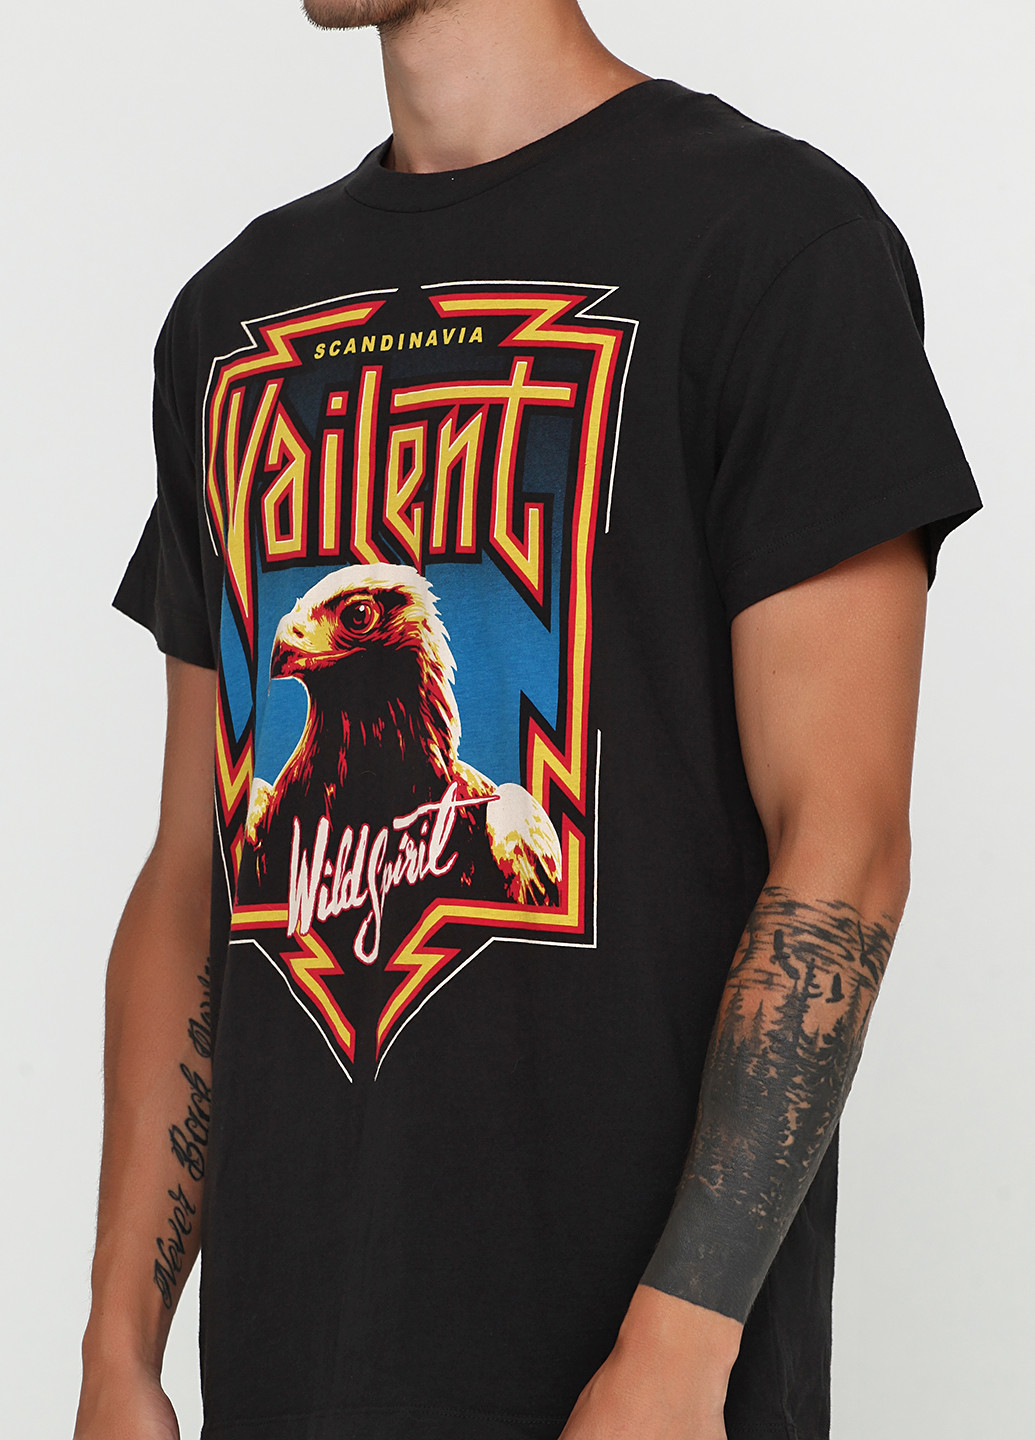 Темно-серая футболка Vailent